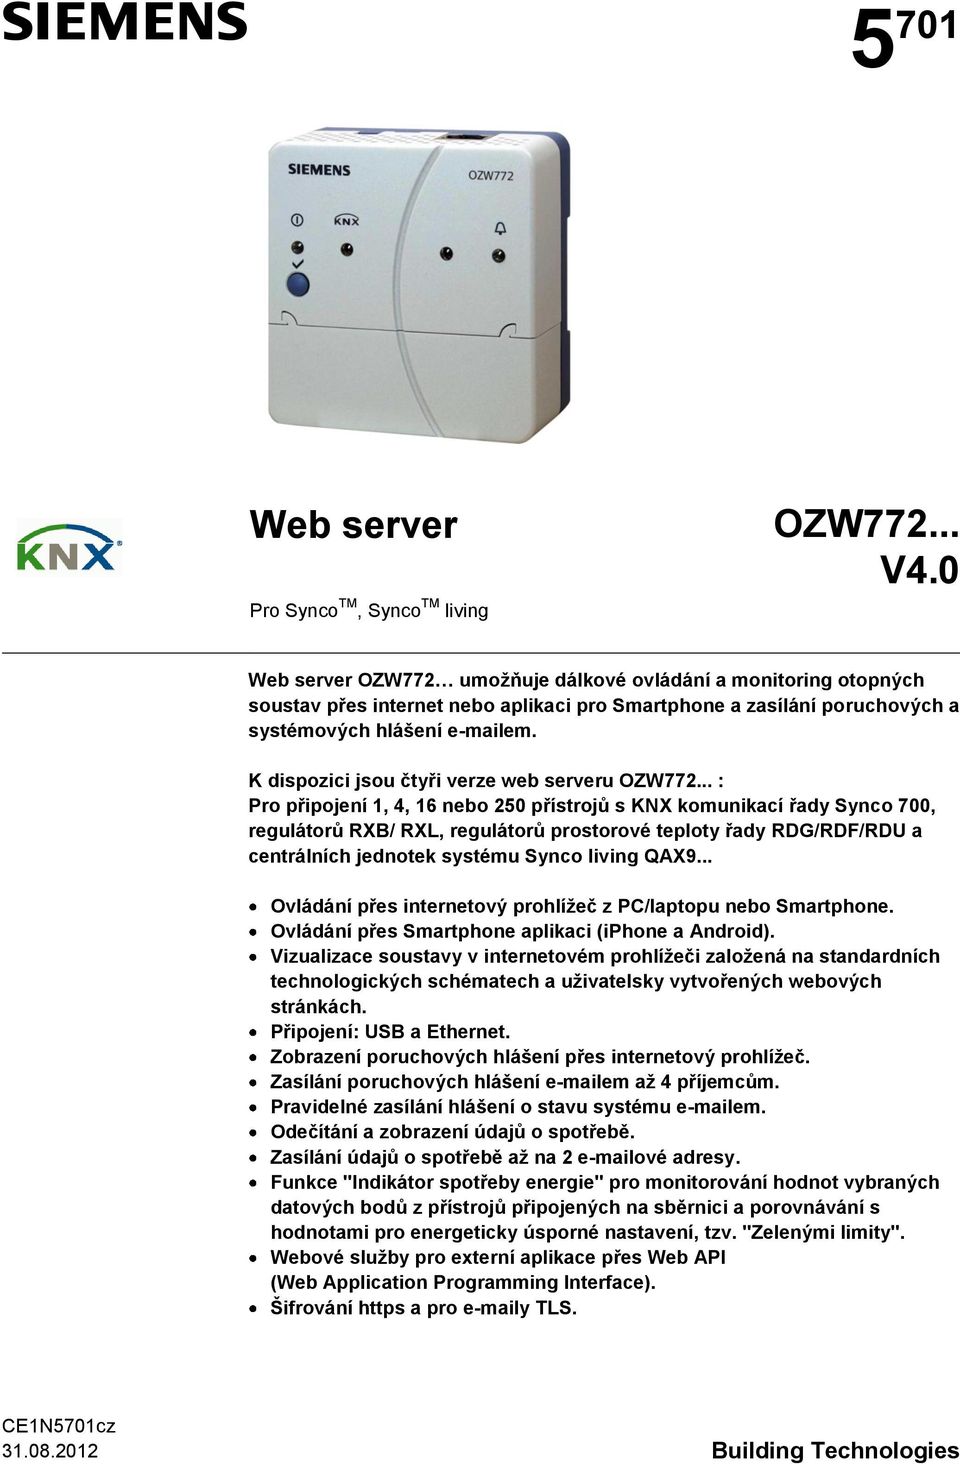 K dispozici jsou čtyři verze web serveru OZW772.